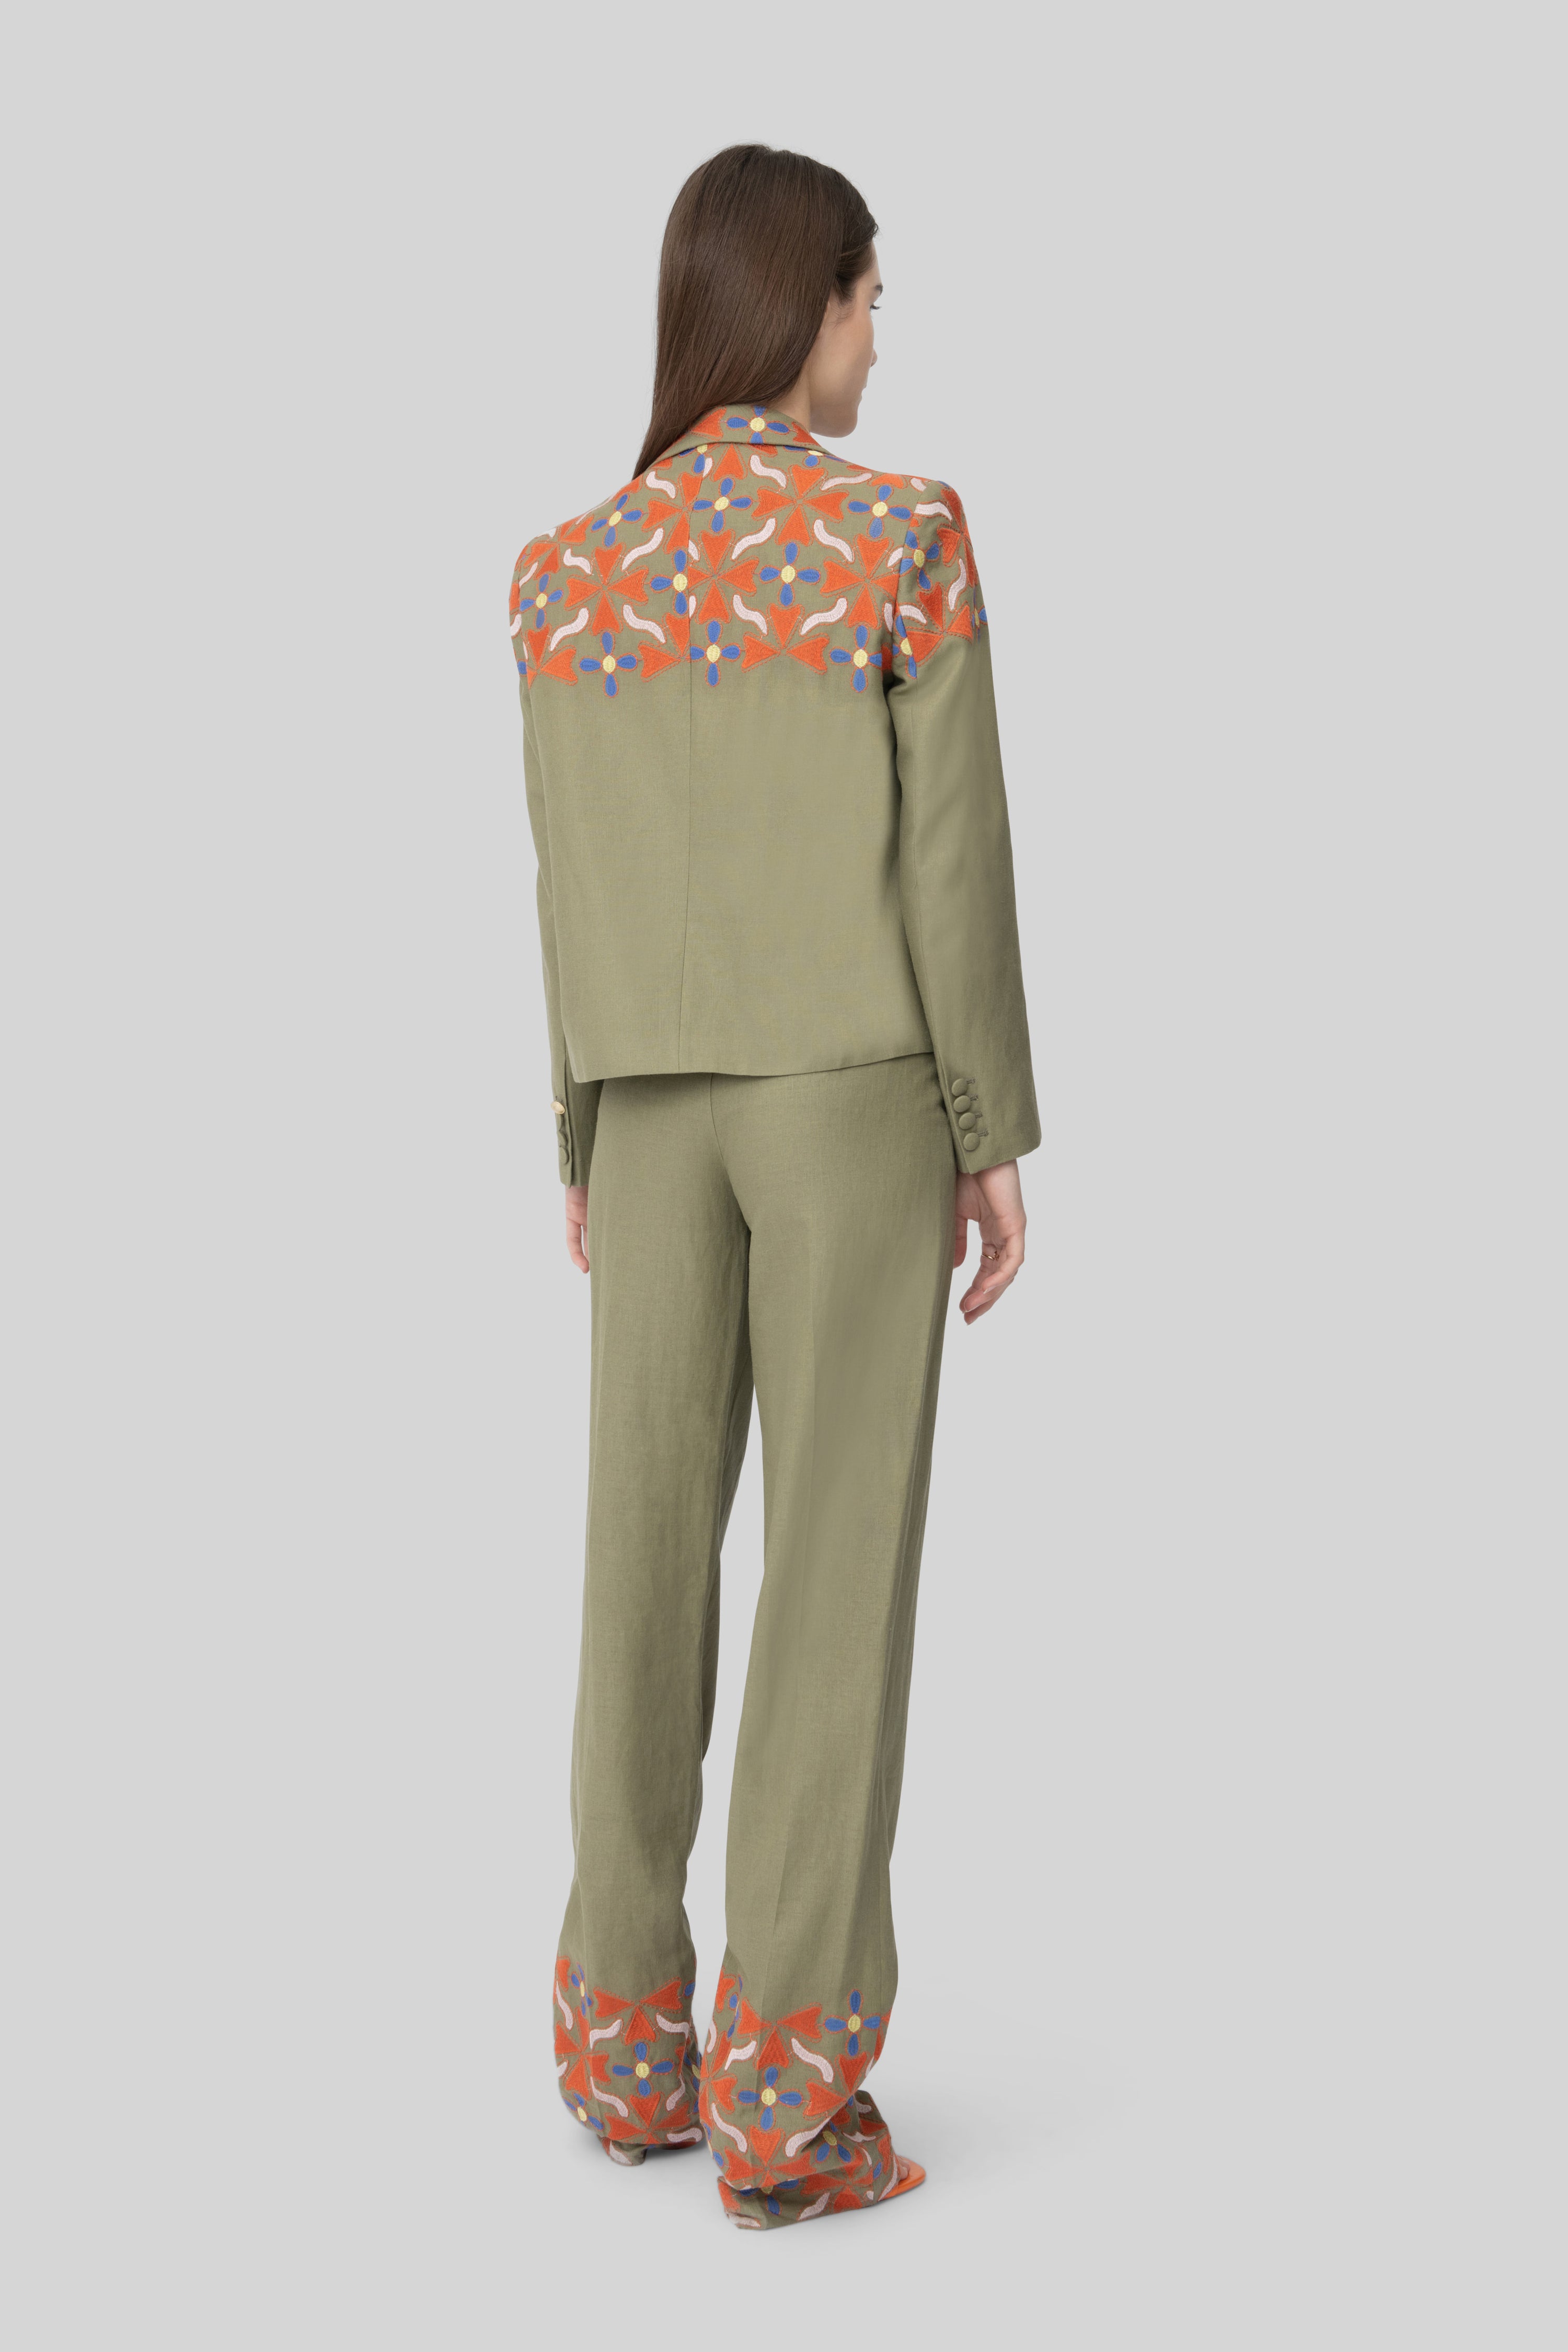 The Army Green & Orange Embroidered Linen Diane Blazer